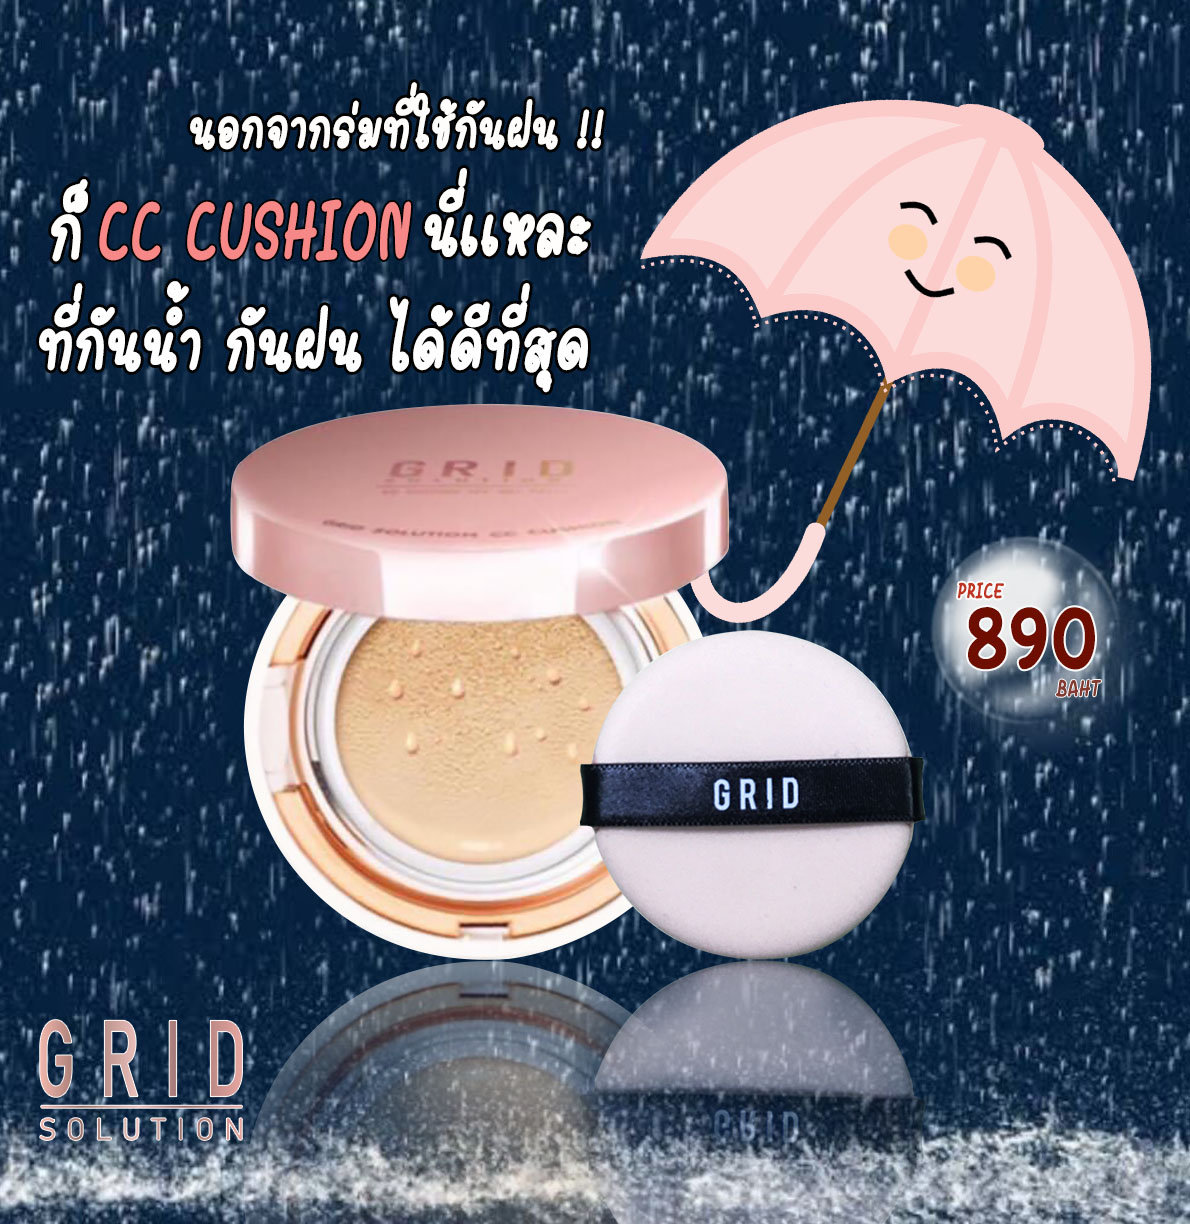 GRID SOLUTION CC CUSHION SPF50+ PA+++ ตลับสี Rose Gold คุชชั่น เนื้อมุก สูตรน้ำแร่ จากเกาหลี